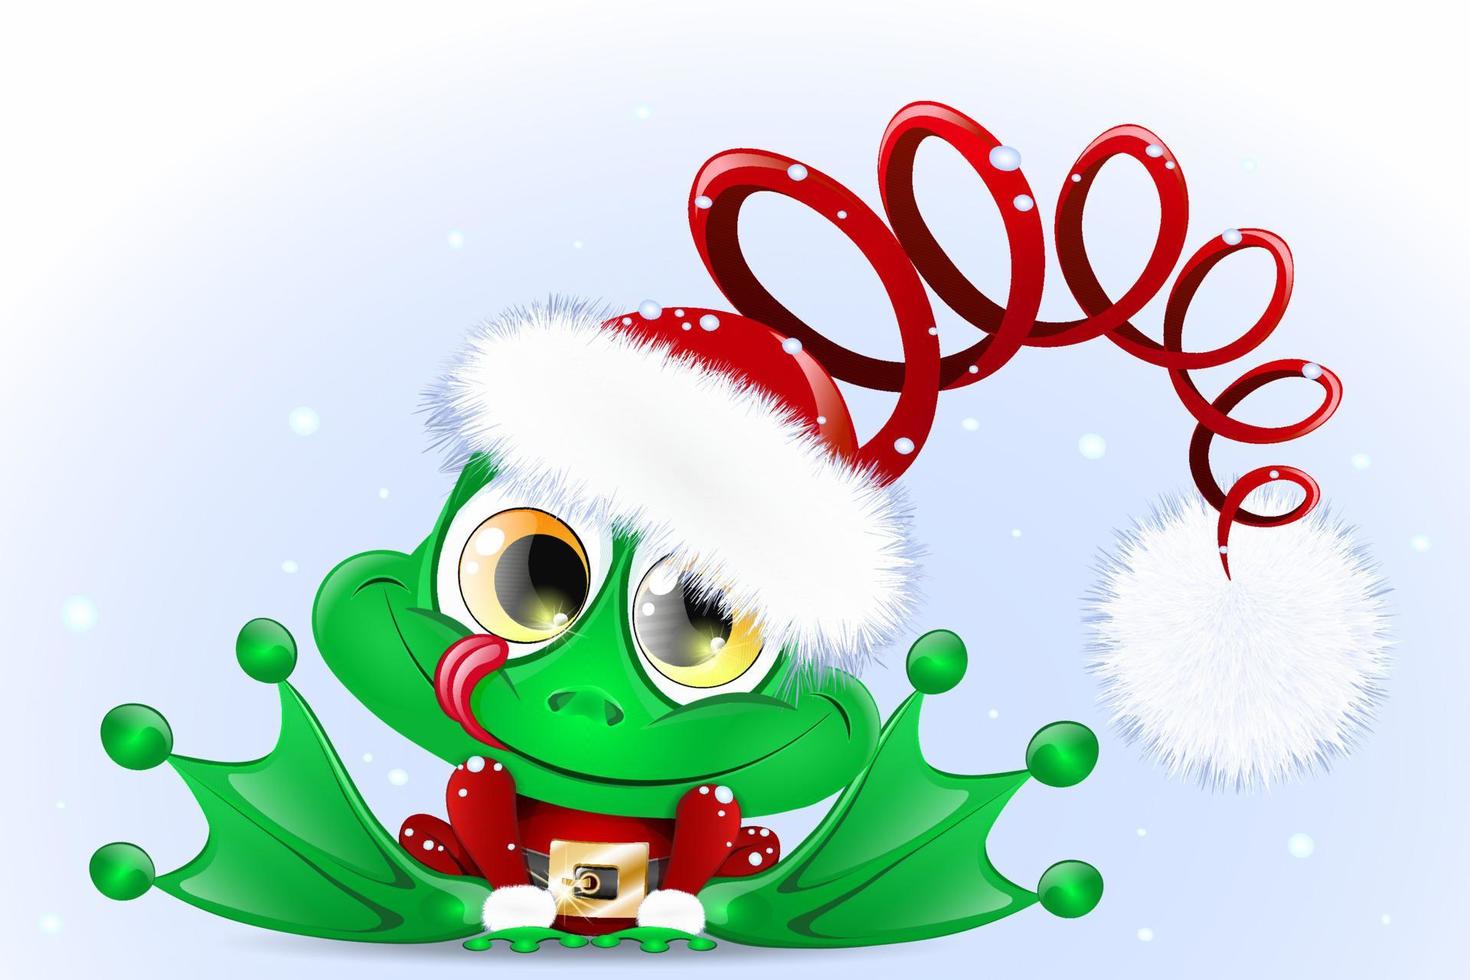 rana de navidad de dibujos animados lindo divertido en el traje de santa con sombrero de santa divertido vector